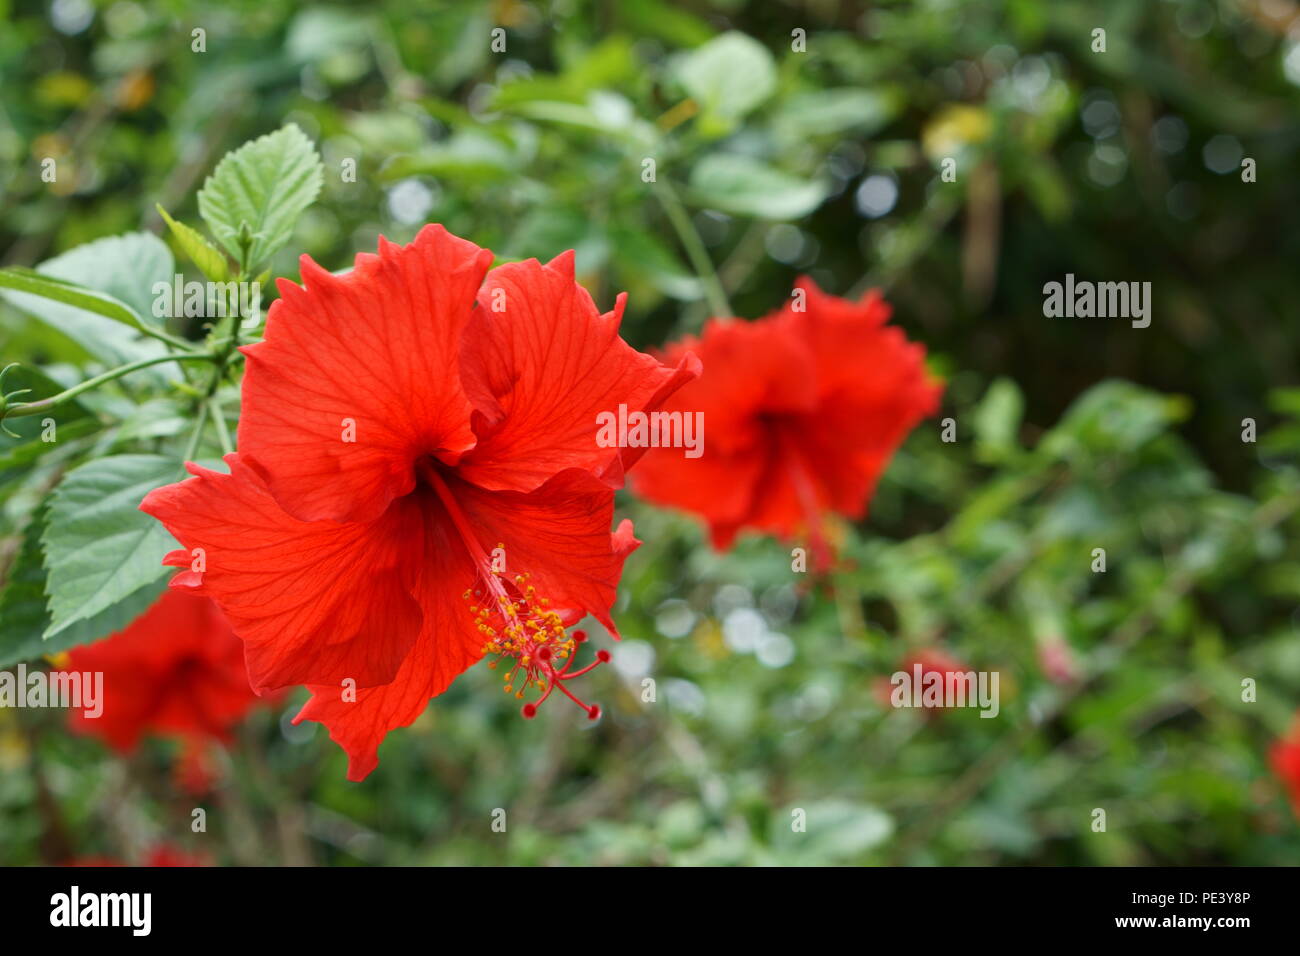 Hibiscus flowers Stock Photo